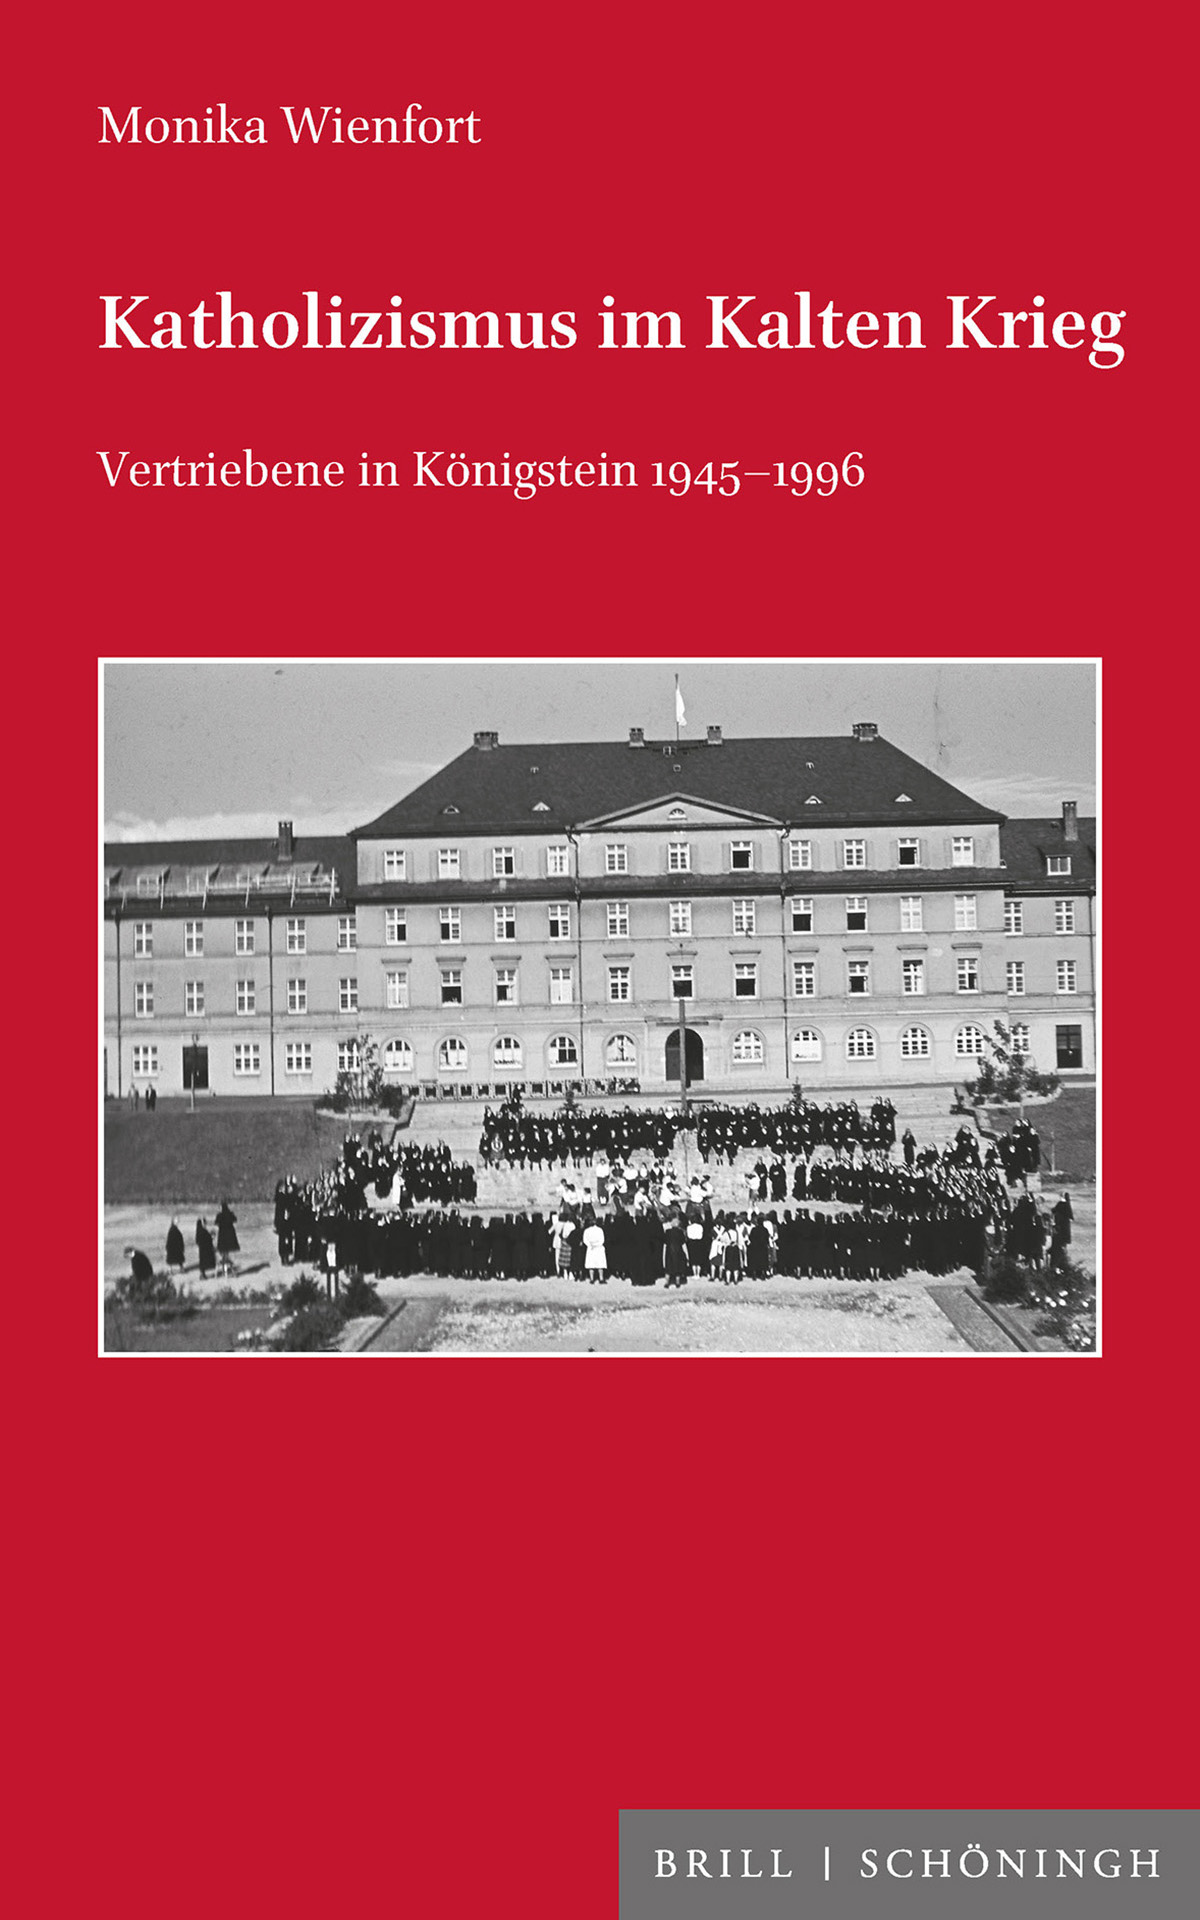 Wienfort, Monika: Katholizismus im Kalten Krieg. Vertriebene in Königstein 1945–1996.